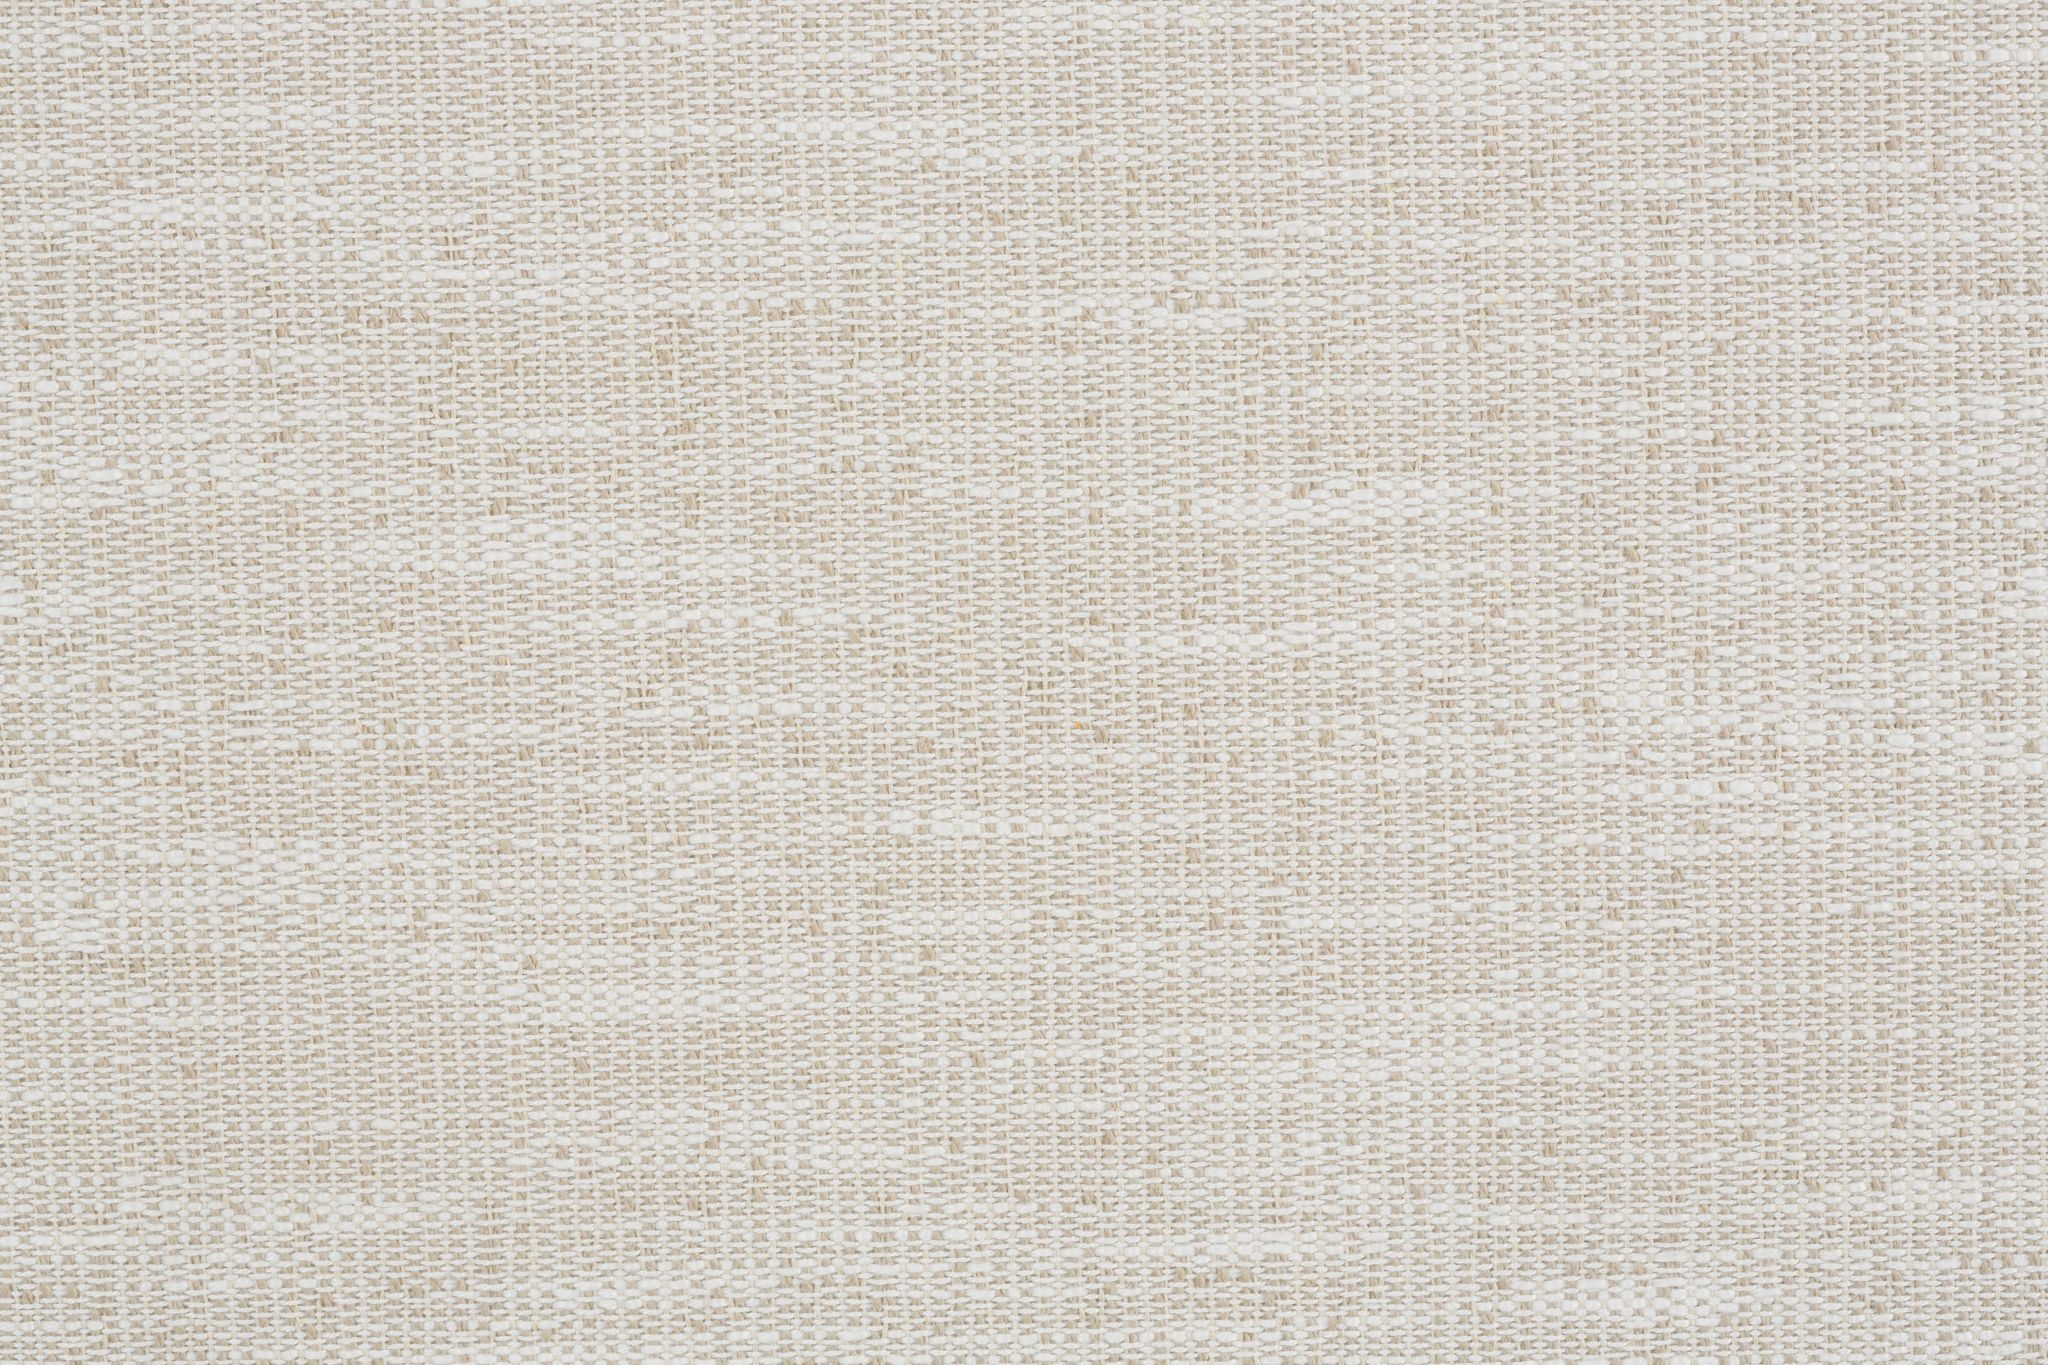 Moreau Slipcover Sofa, Bench Cushion, White, 95" - Image 13